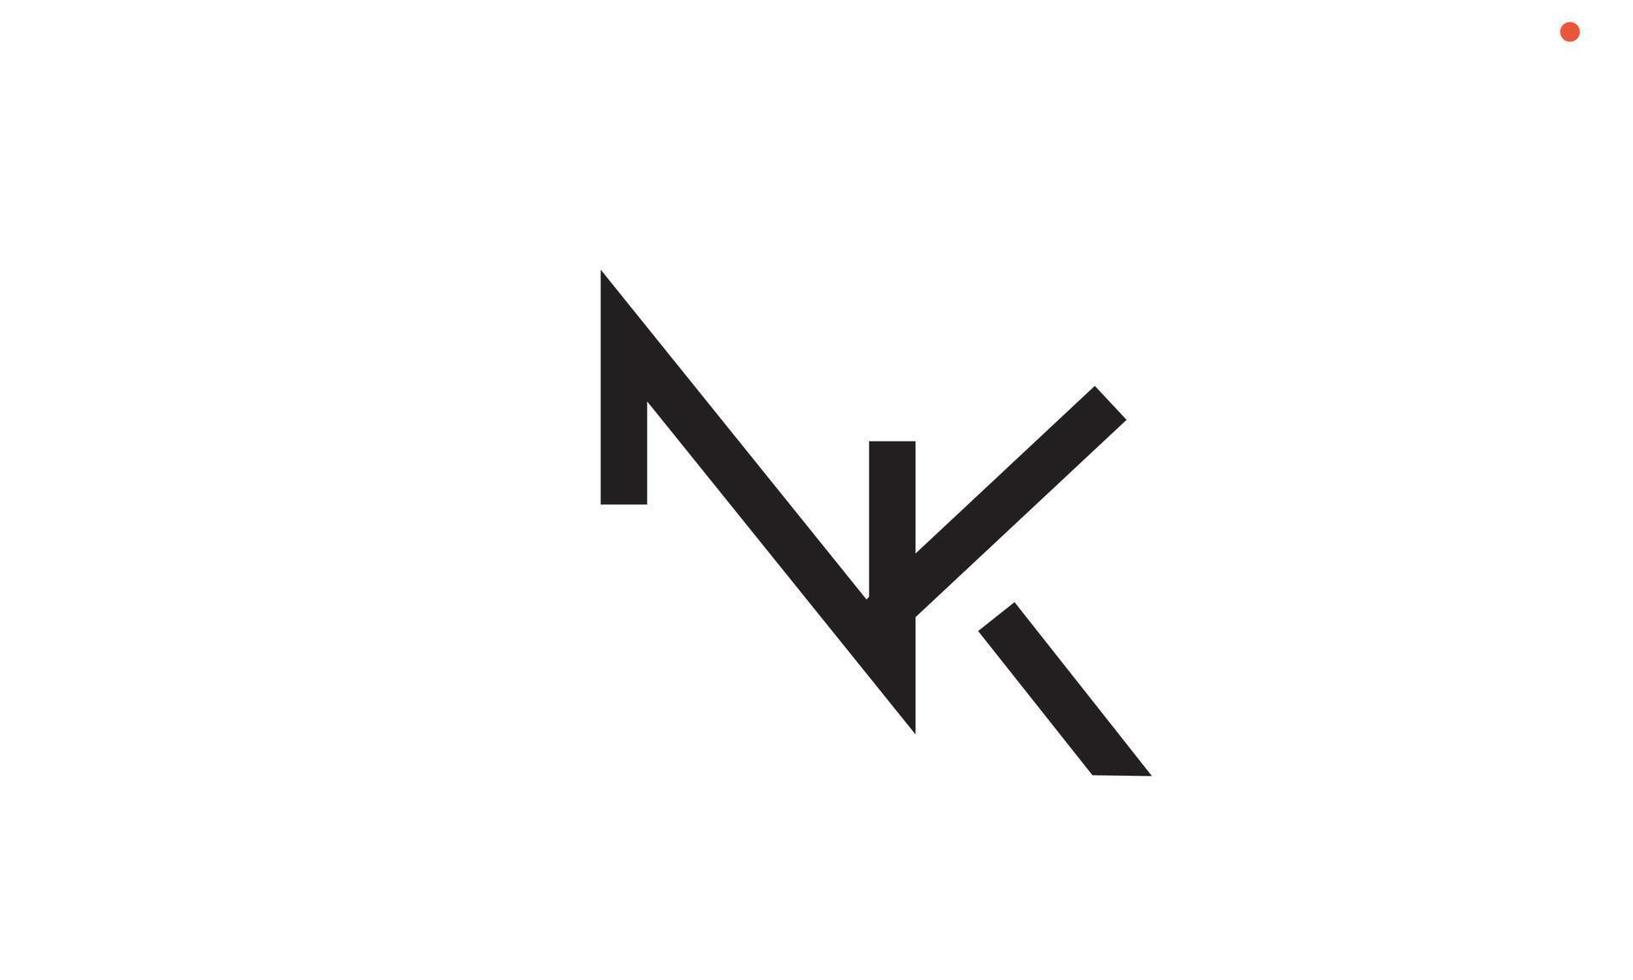 letras do alfabeto iniciais monograma logotipo nk, kn, n e k vetor